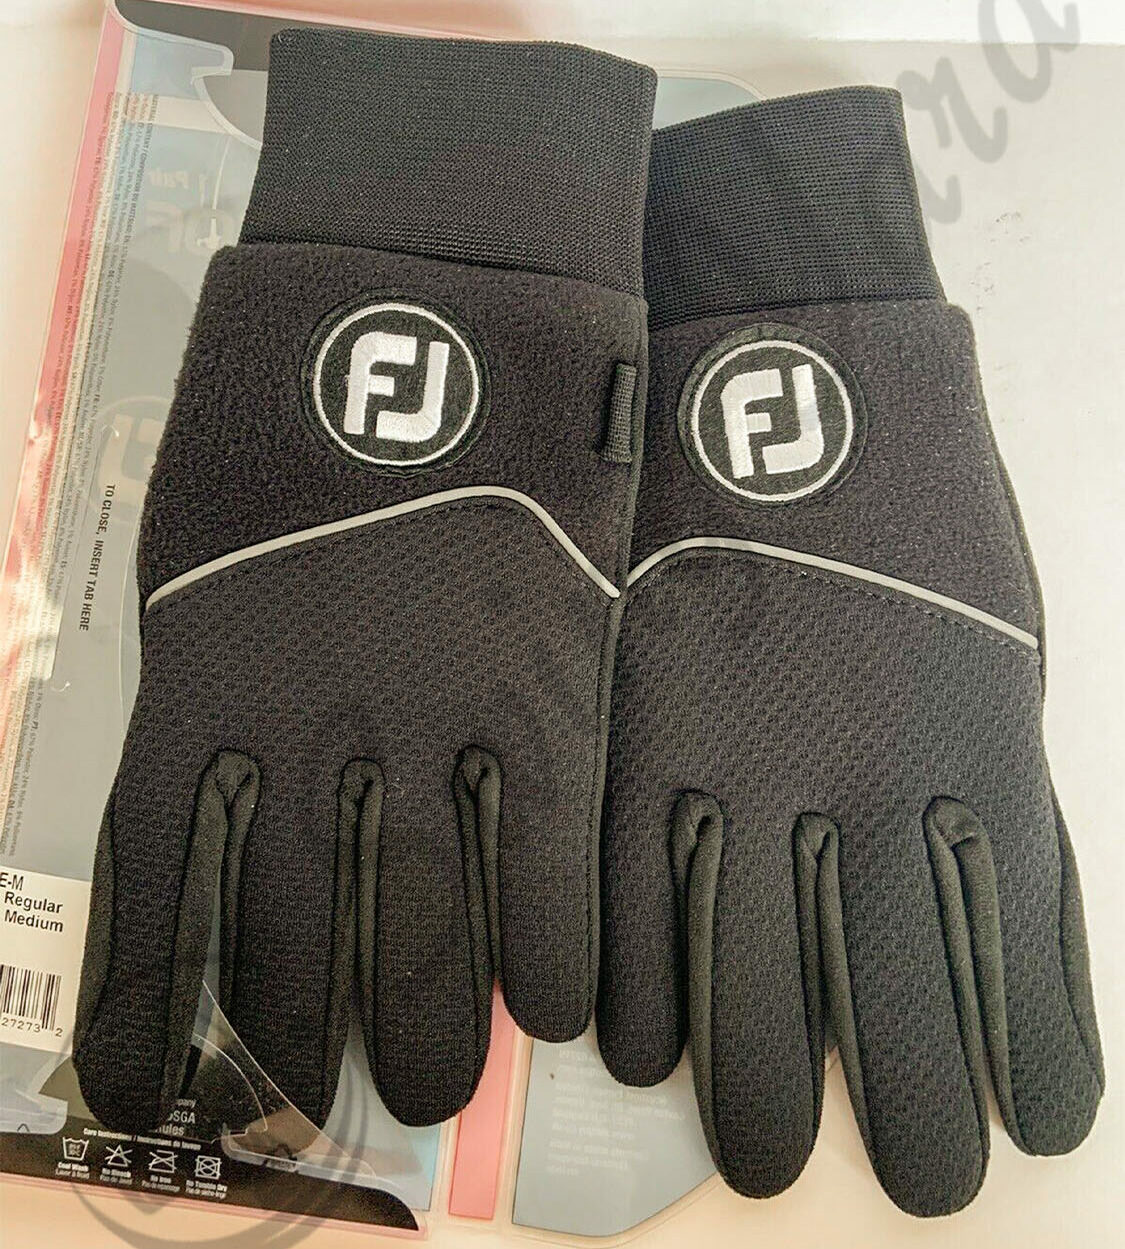 A pair of FootJoy women winter sof golf gloves